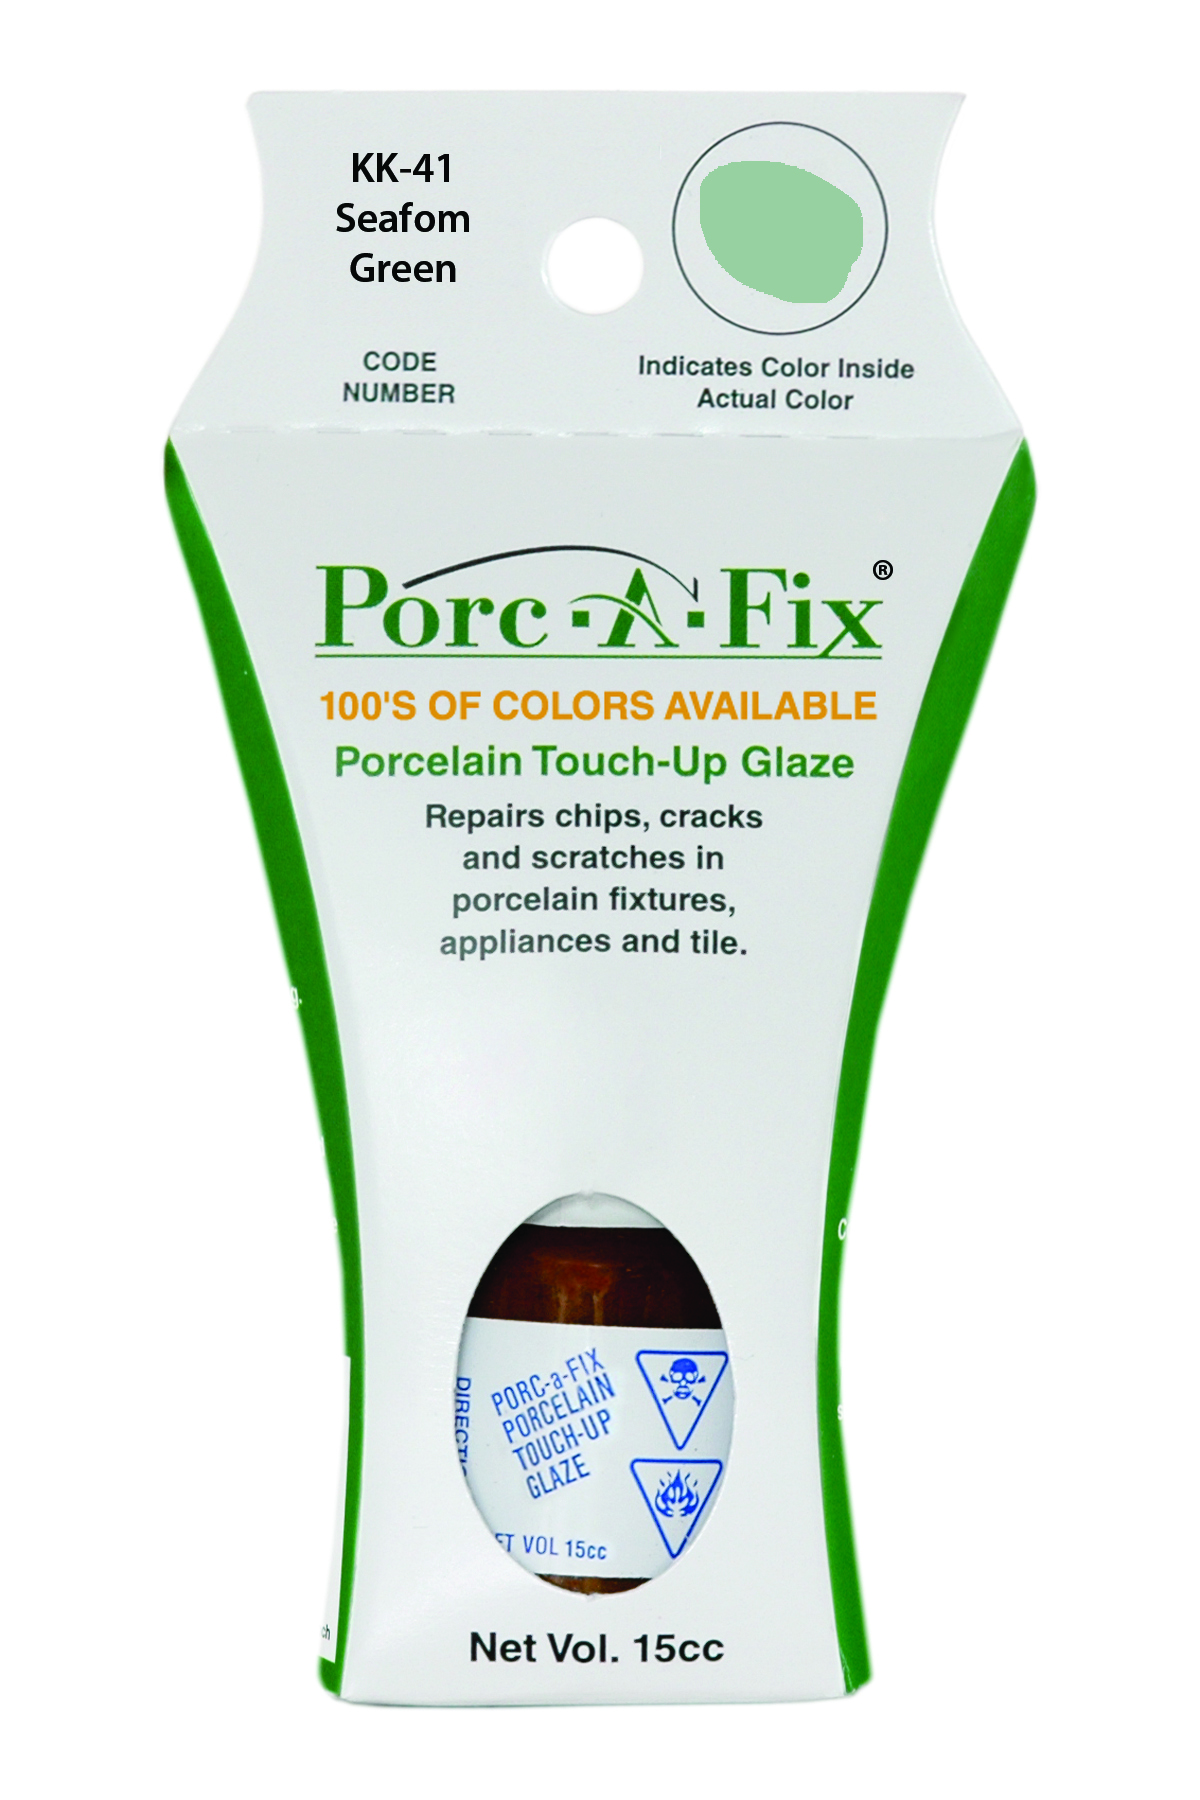 Fixture-Fix | KK-41 | Porc-A-Fix Touch-Up Glaze Kohler Seafoam Green - Compatible with Kohler K-500306-71 Touch Up Paint Kit - SEAFOAM GREEN